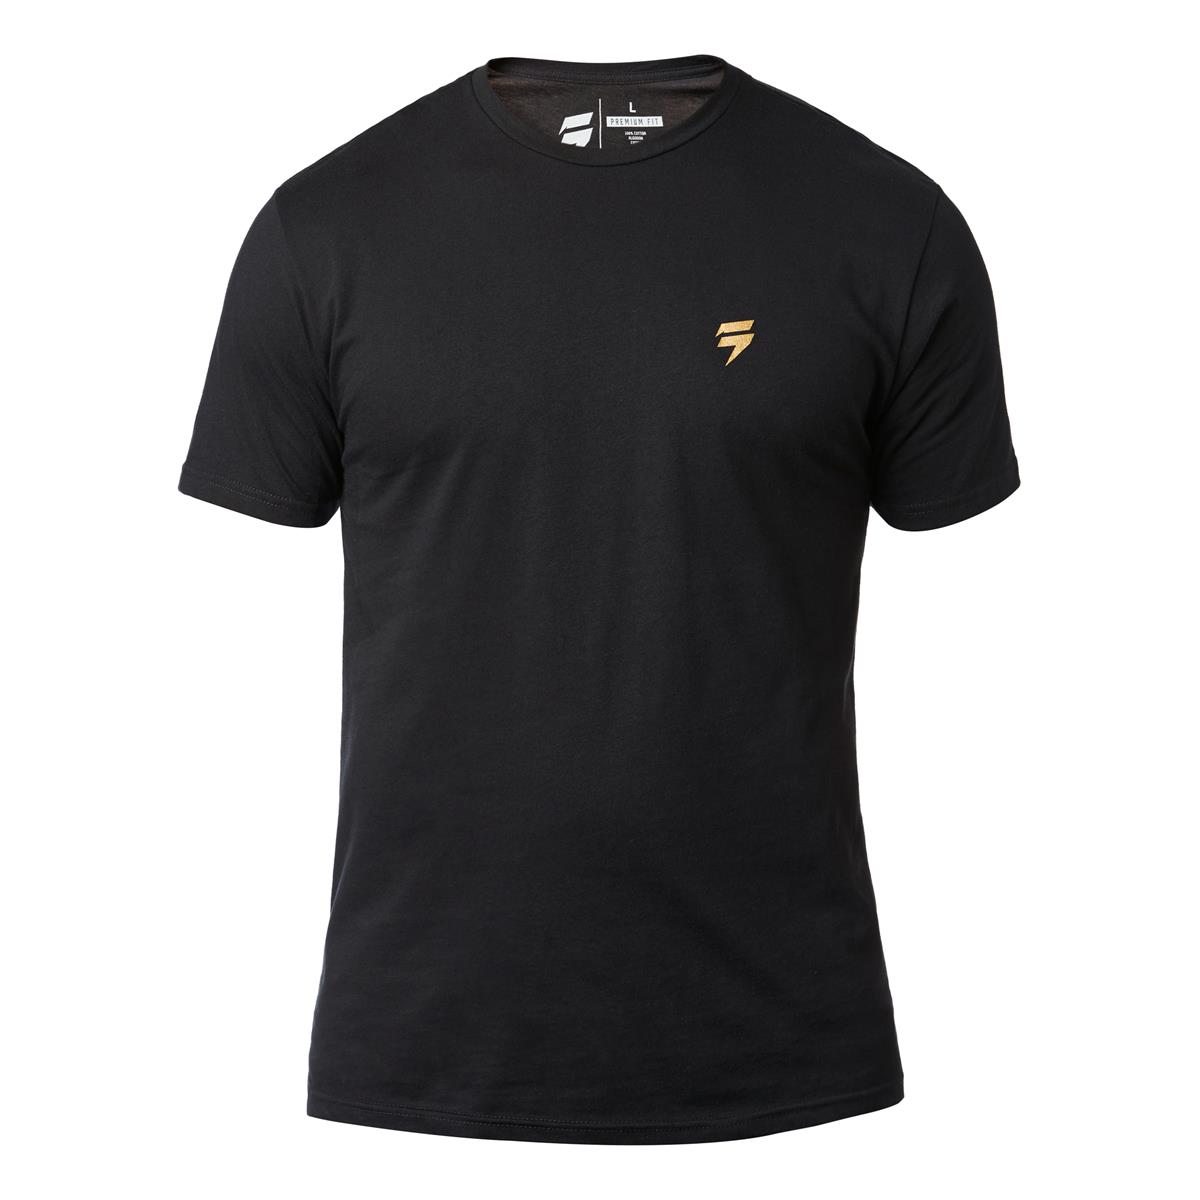 Shift T-Shirt 3lack Label Copa Noir - Special Edition Muerte